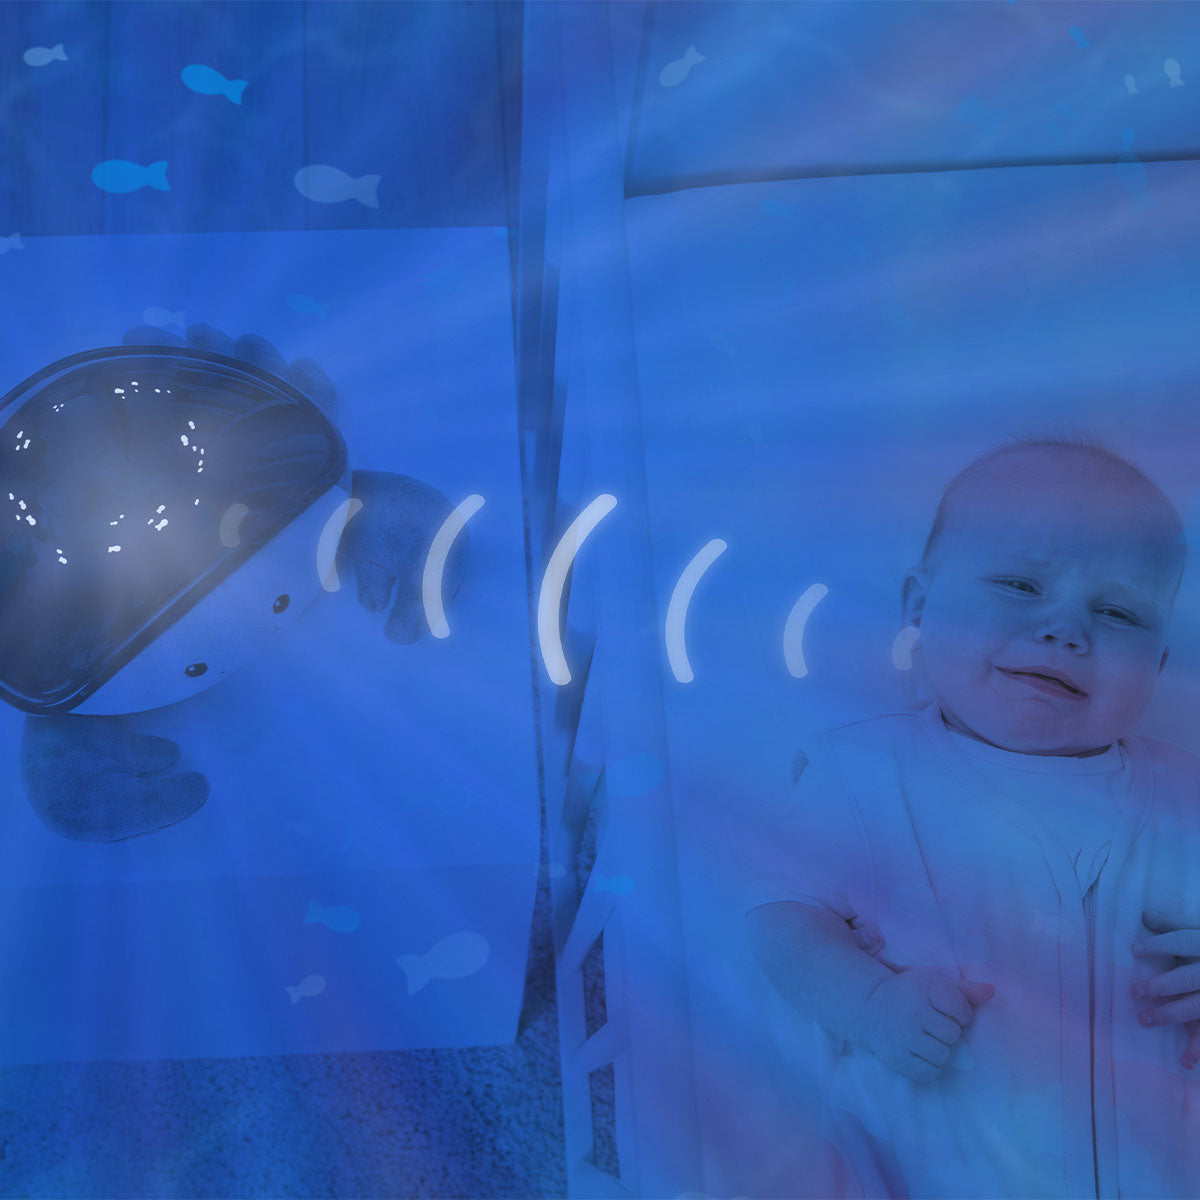 Met de ZAZU Cody ocean projector tover je iedere ruimte in een oogwenk om in een schitterende onderwaterwereld. De knuffel helpt je kindje met geluiden en lichtprojectie om lekker rustig in slaap te vallen. VanZus.